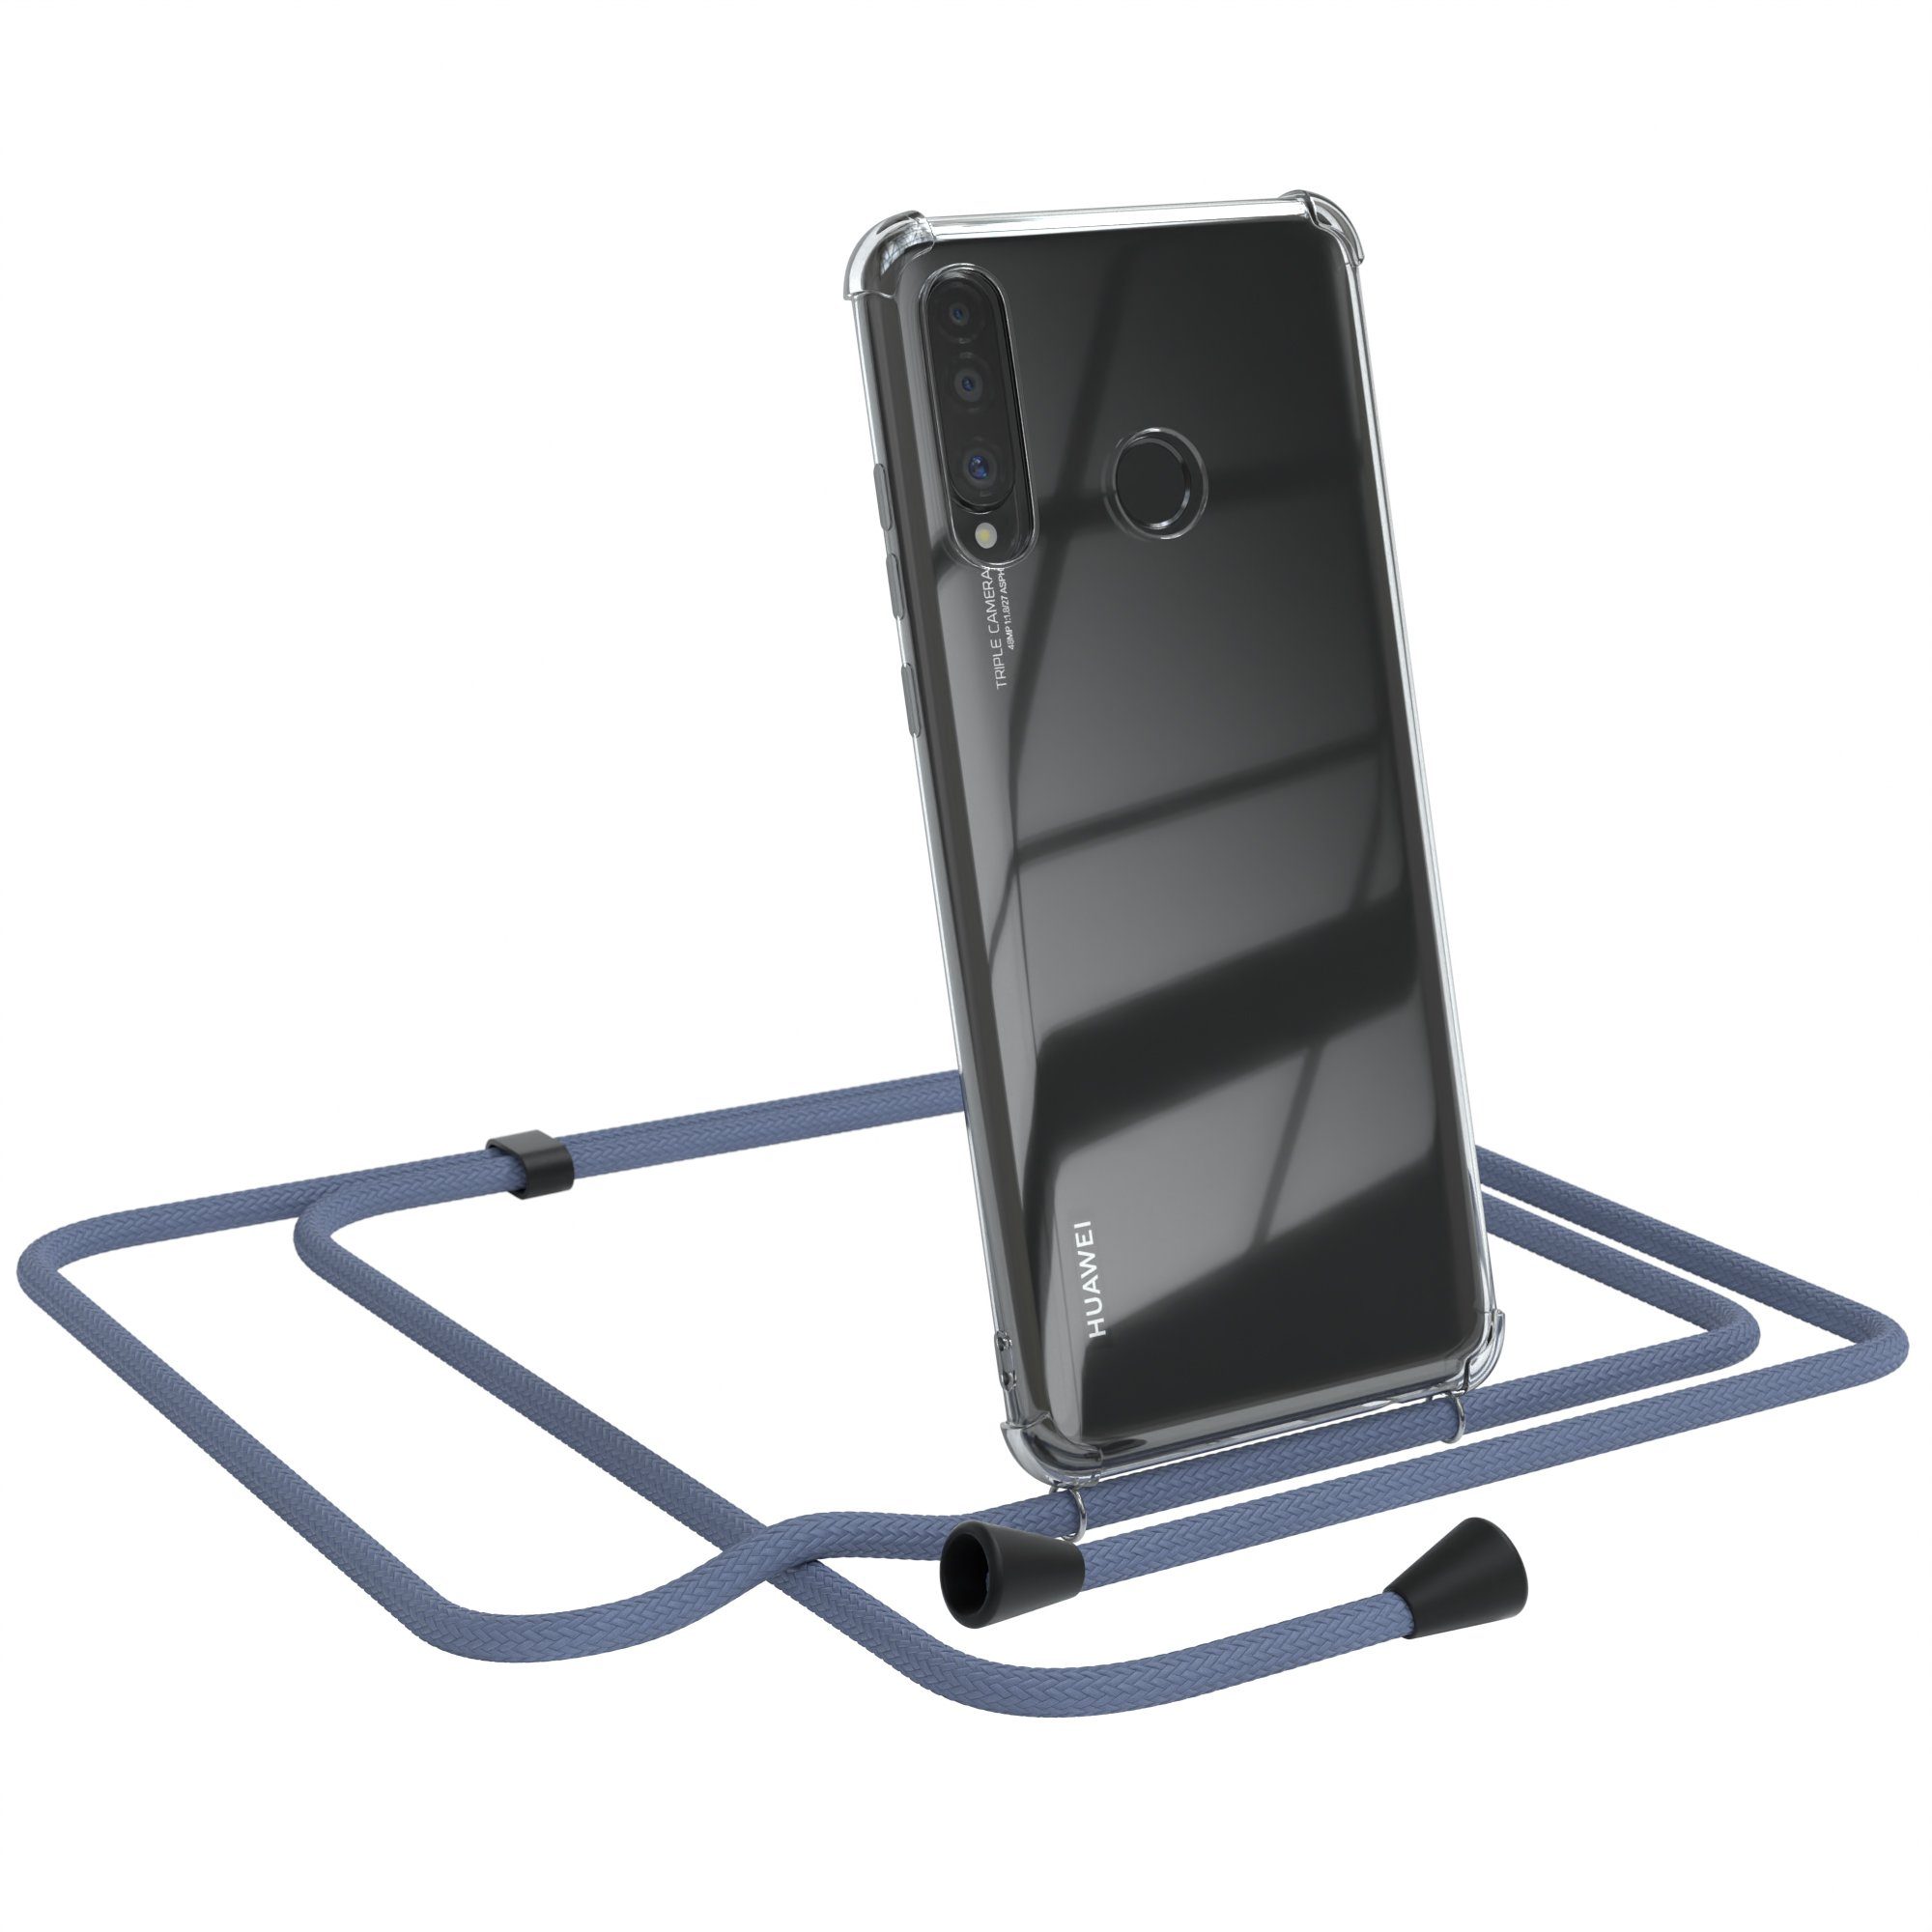 EAZY CASE Handykette Kette Clips Schwarz für Huawei P30 Lite 6,15 Zoll, Silikonhülle Transparent Handyhülle mit Kordel Kette zum Umhängen Blau